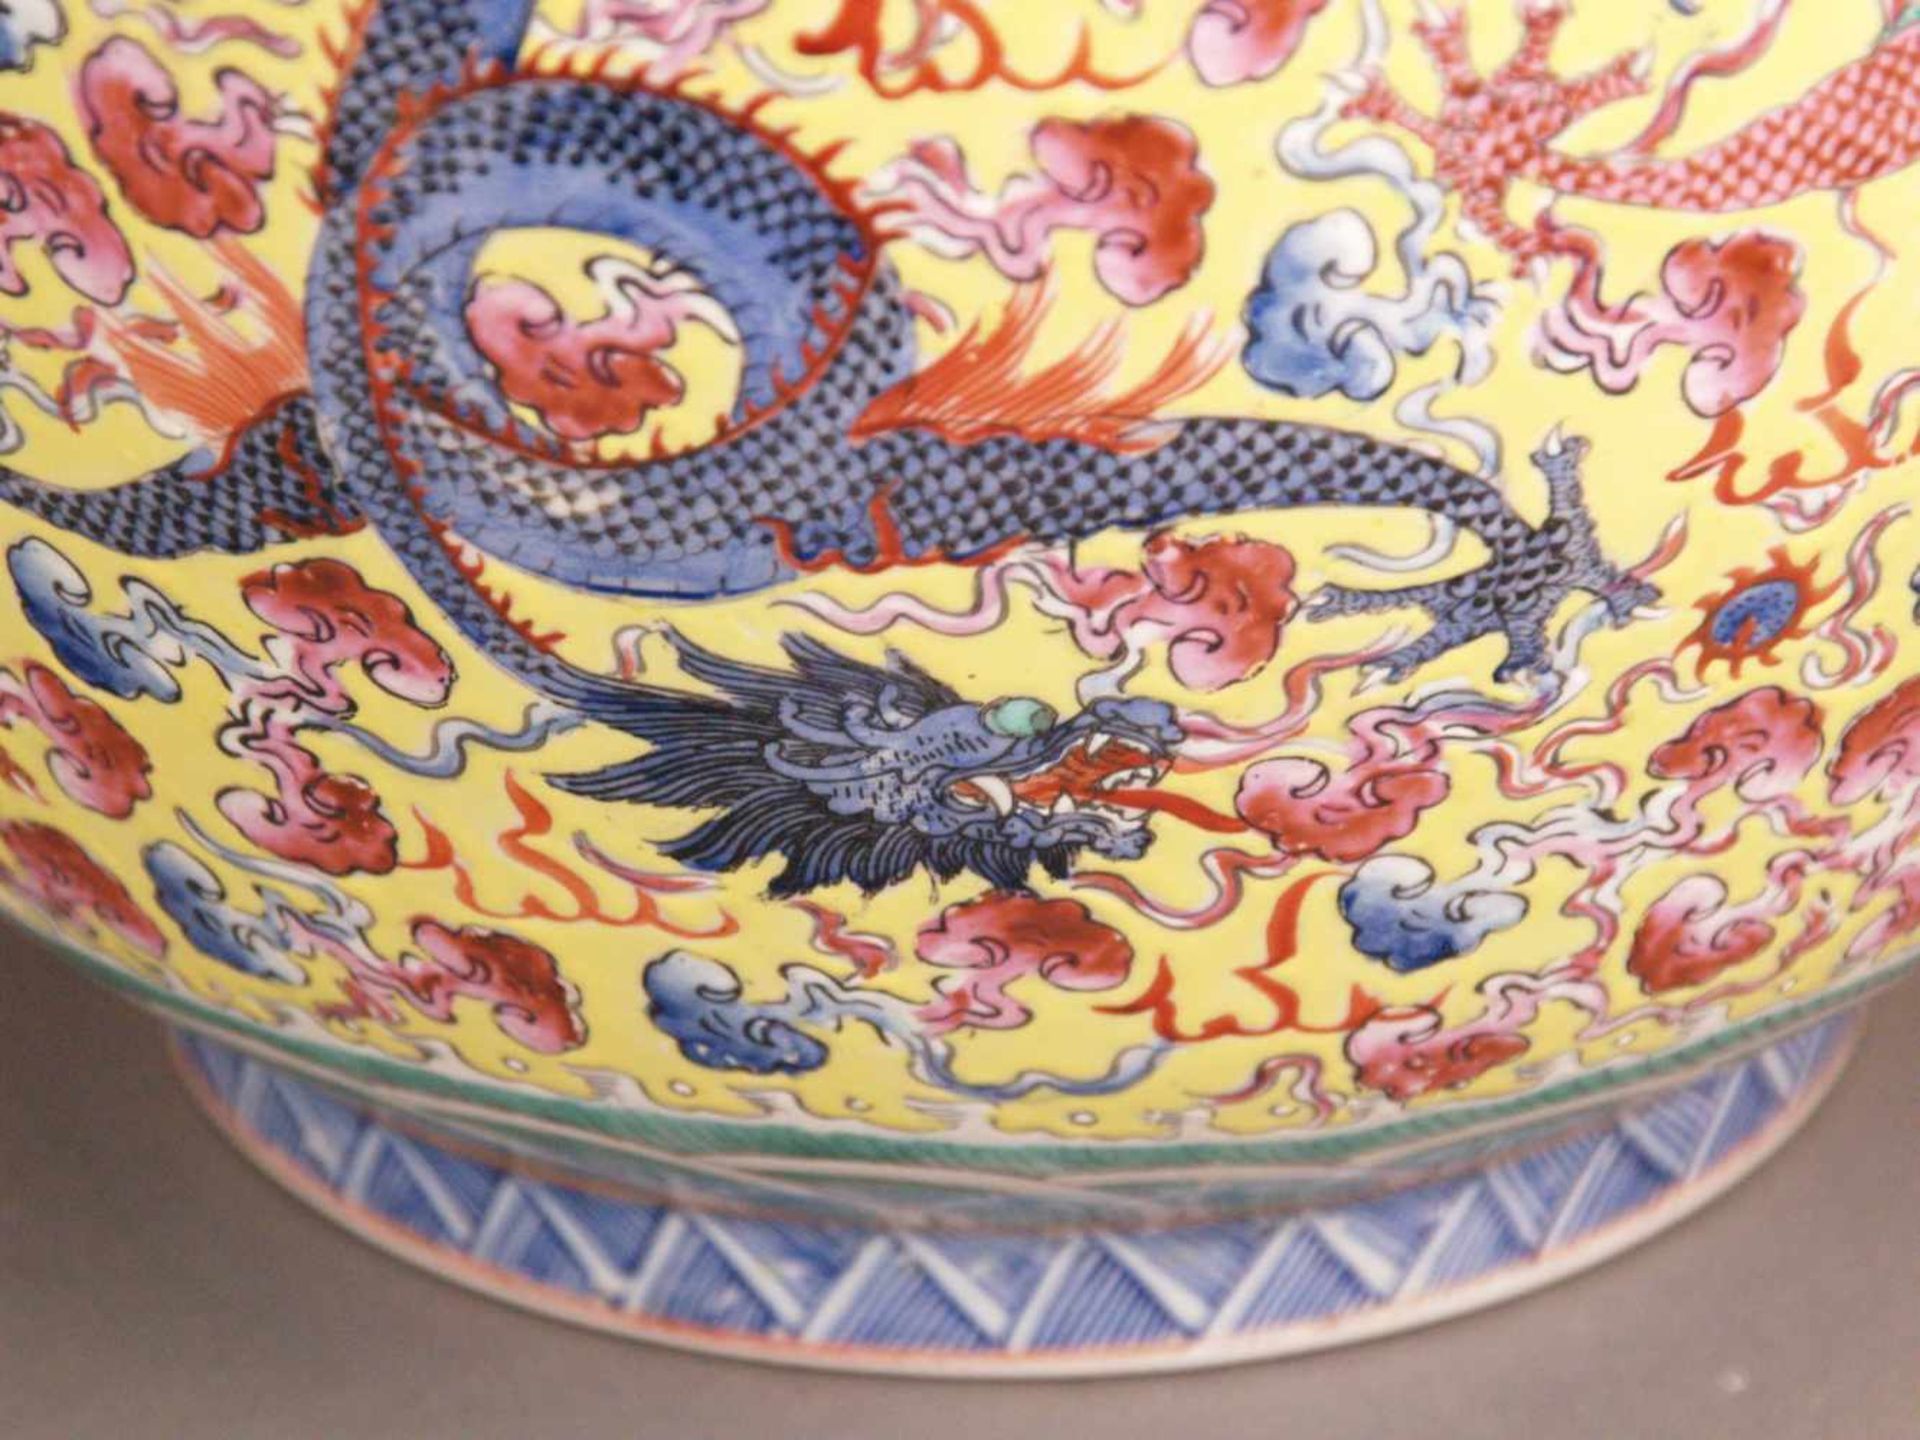 Paar Bodenvasen - China 20.Jh.,Tian qiu ping-Typus, üppiger Dekor in polychromen Emailfarben, auf - Bild 10 aus 15